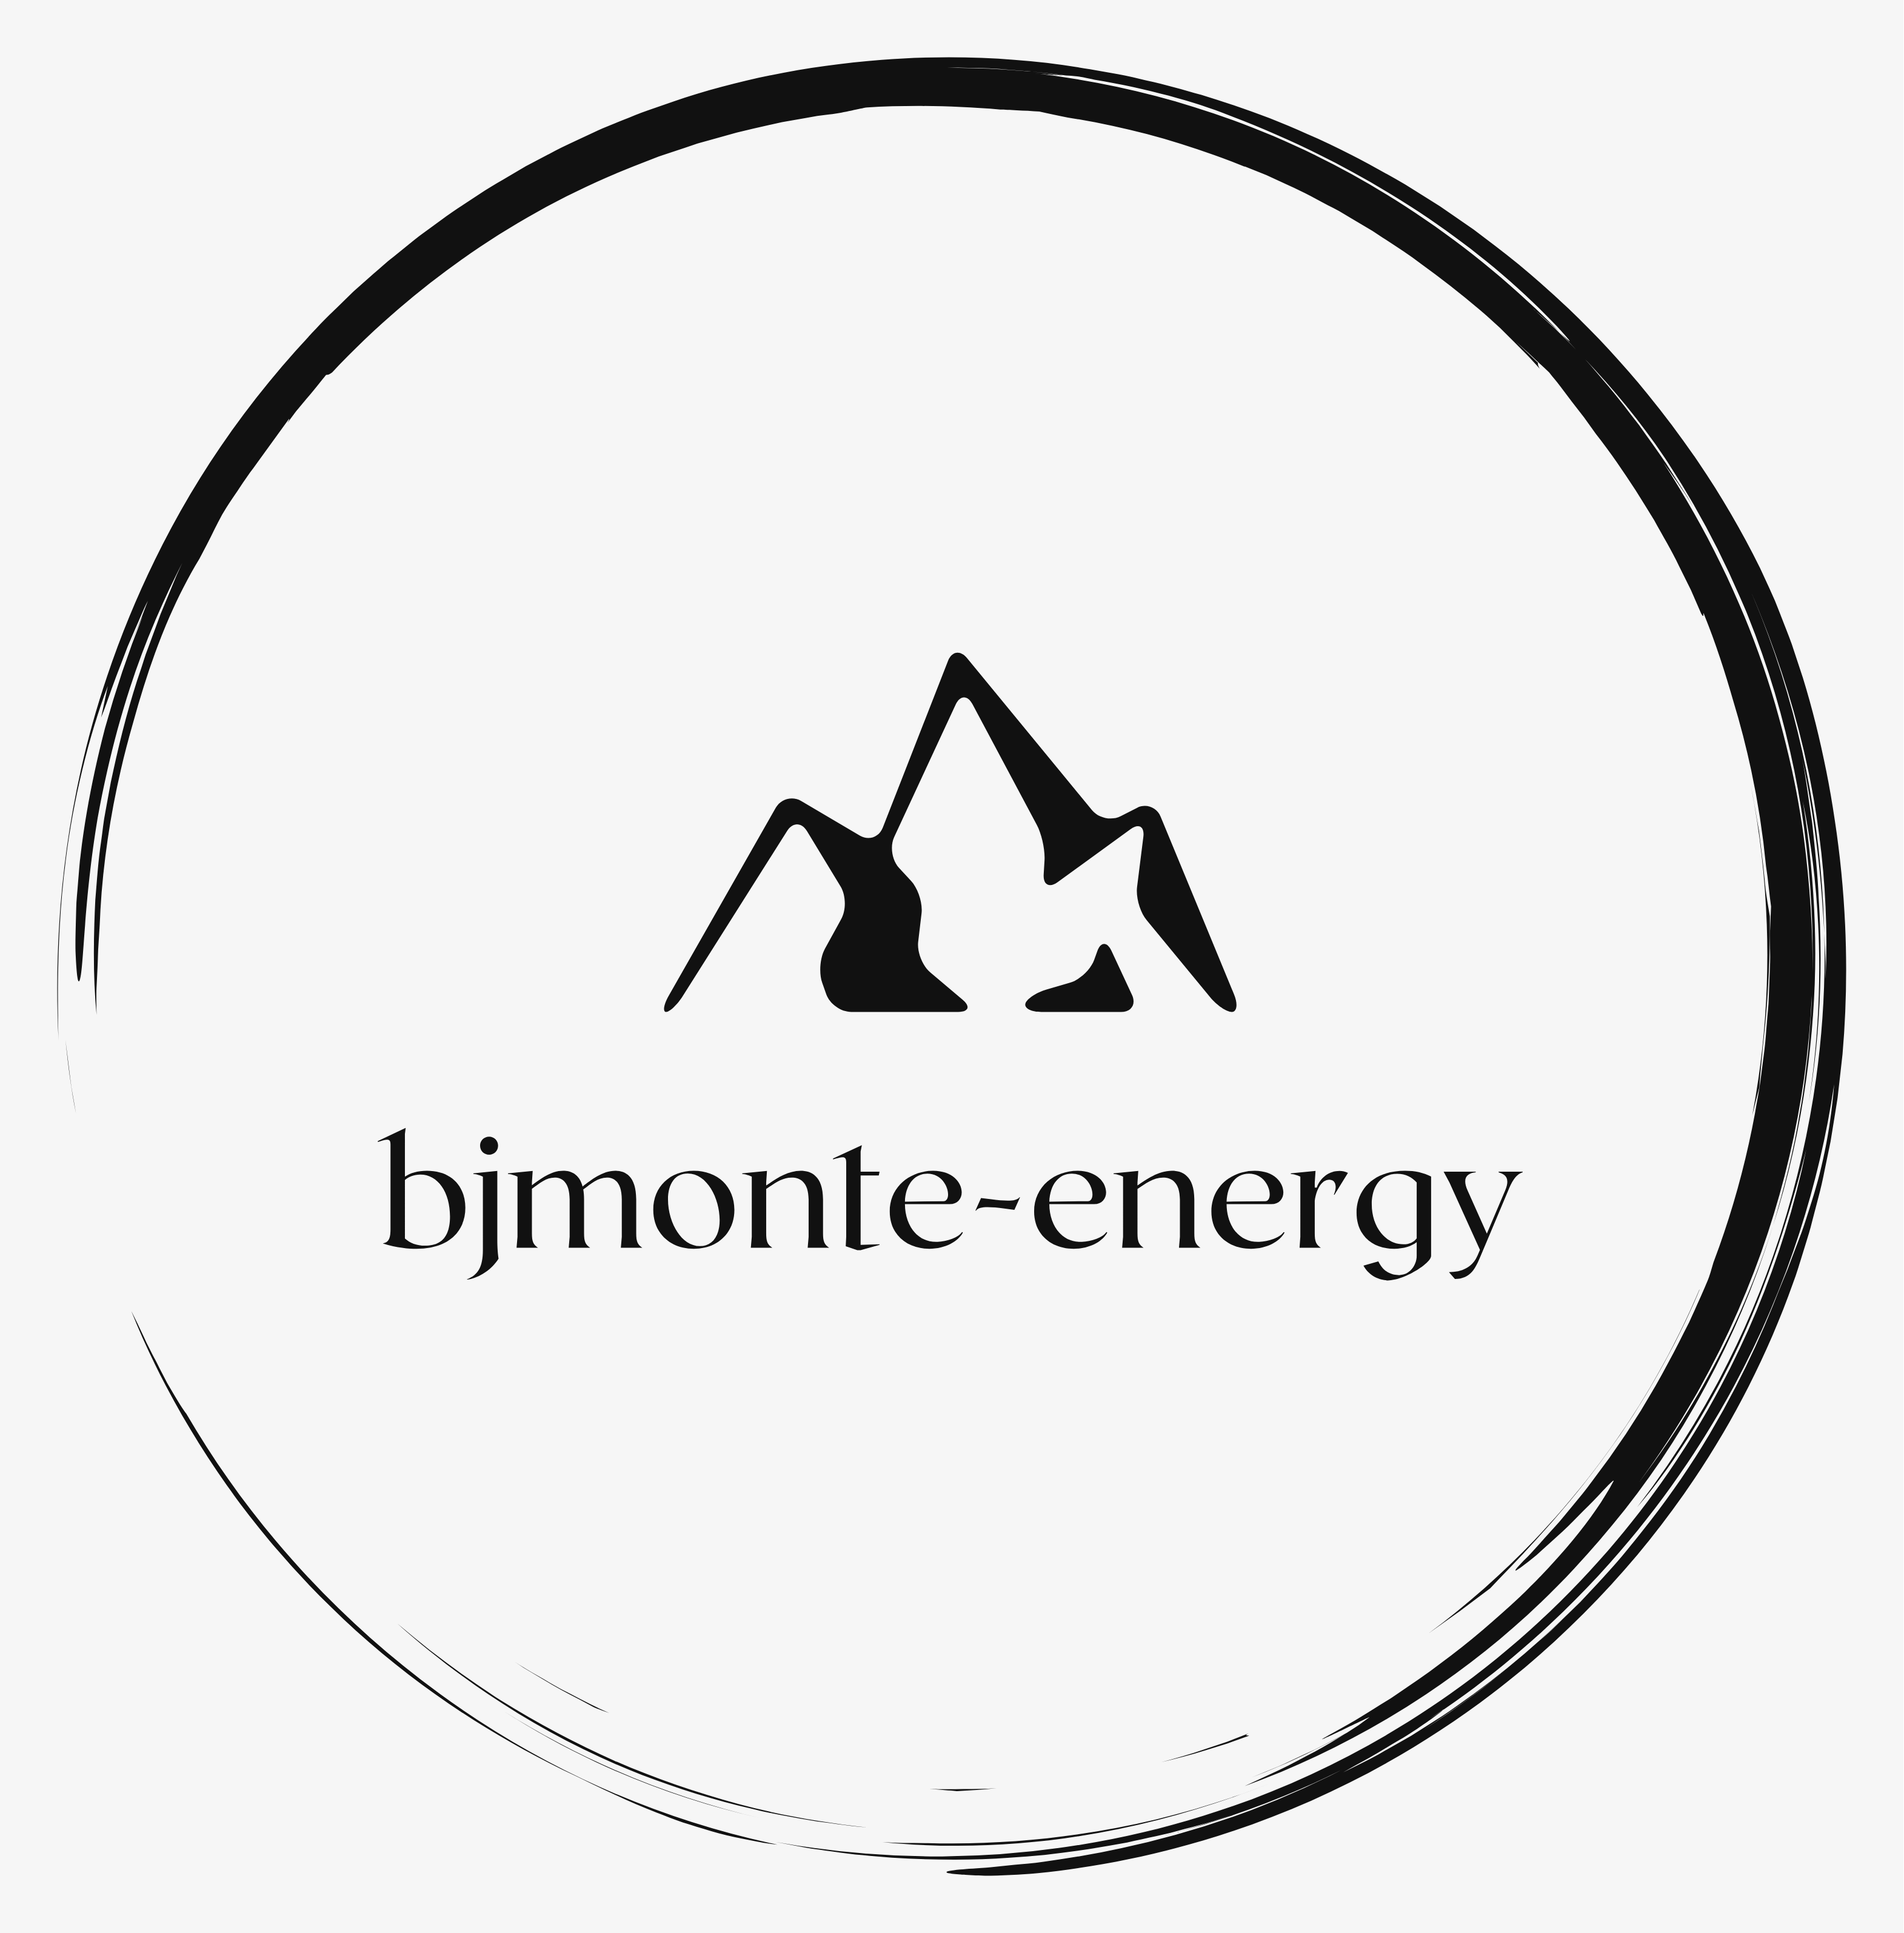 BJMonte-Energy